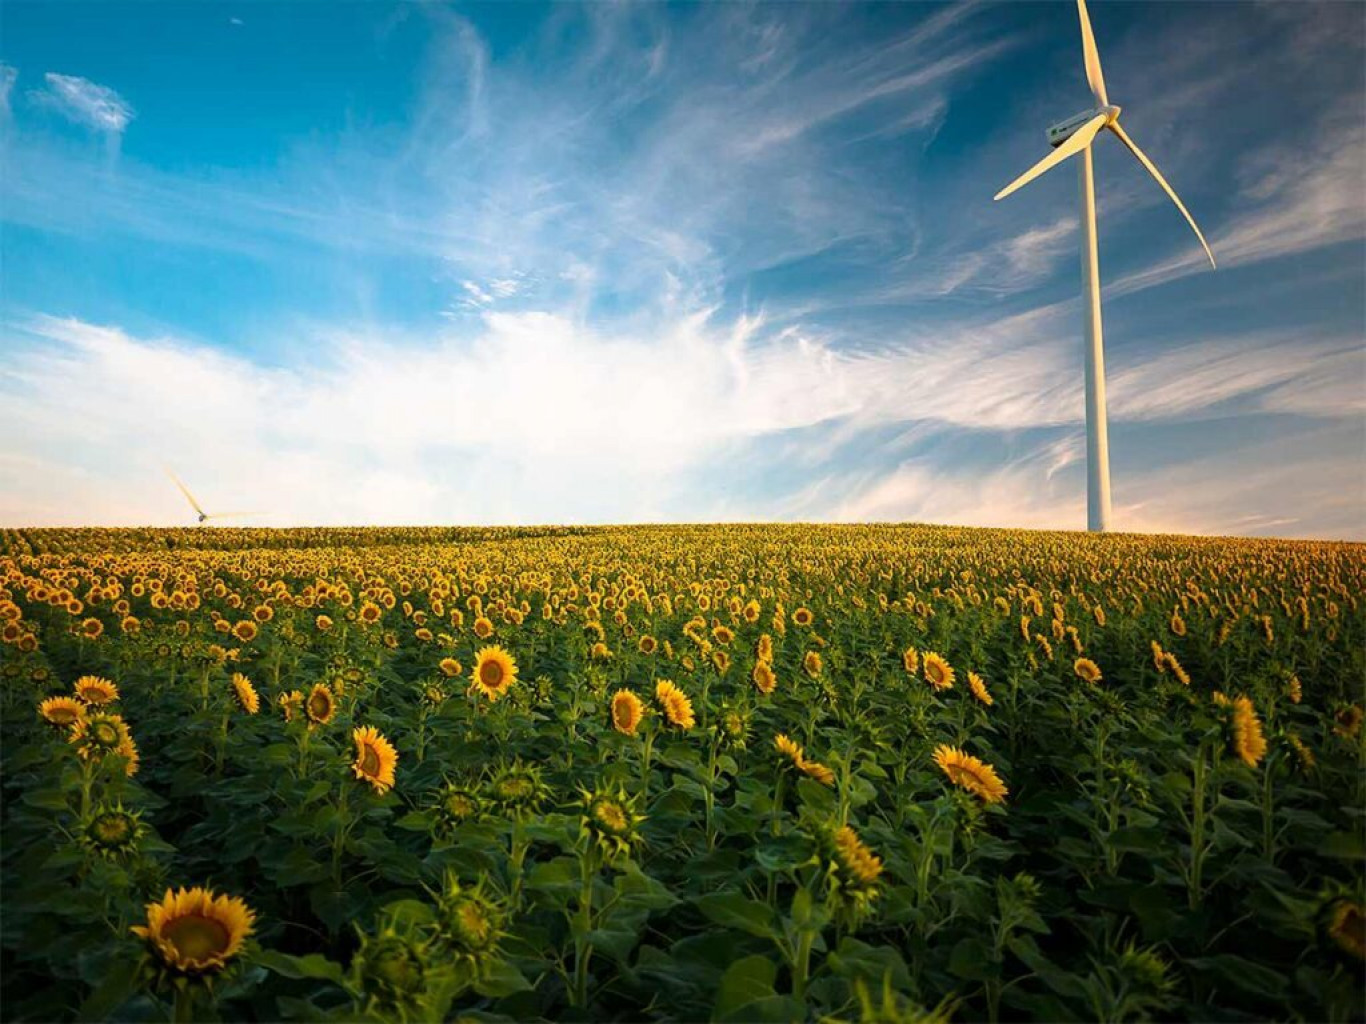 Tuuleenergia on töökindel ja roheline viis, kuidas kasvavat energiavajadust rahuldada. Mida tuulepargiks vaja on? Ühe tuulepargi püstitamiseks on vajalik leida